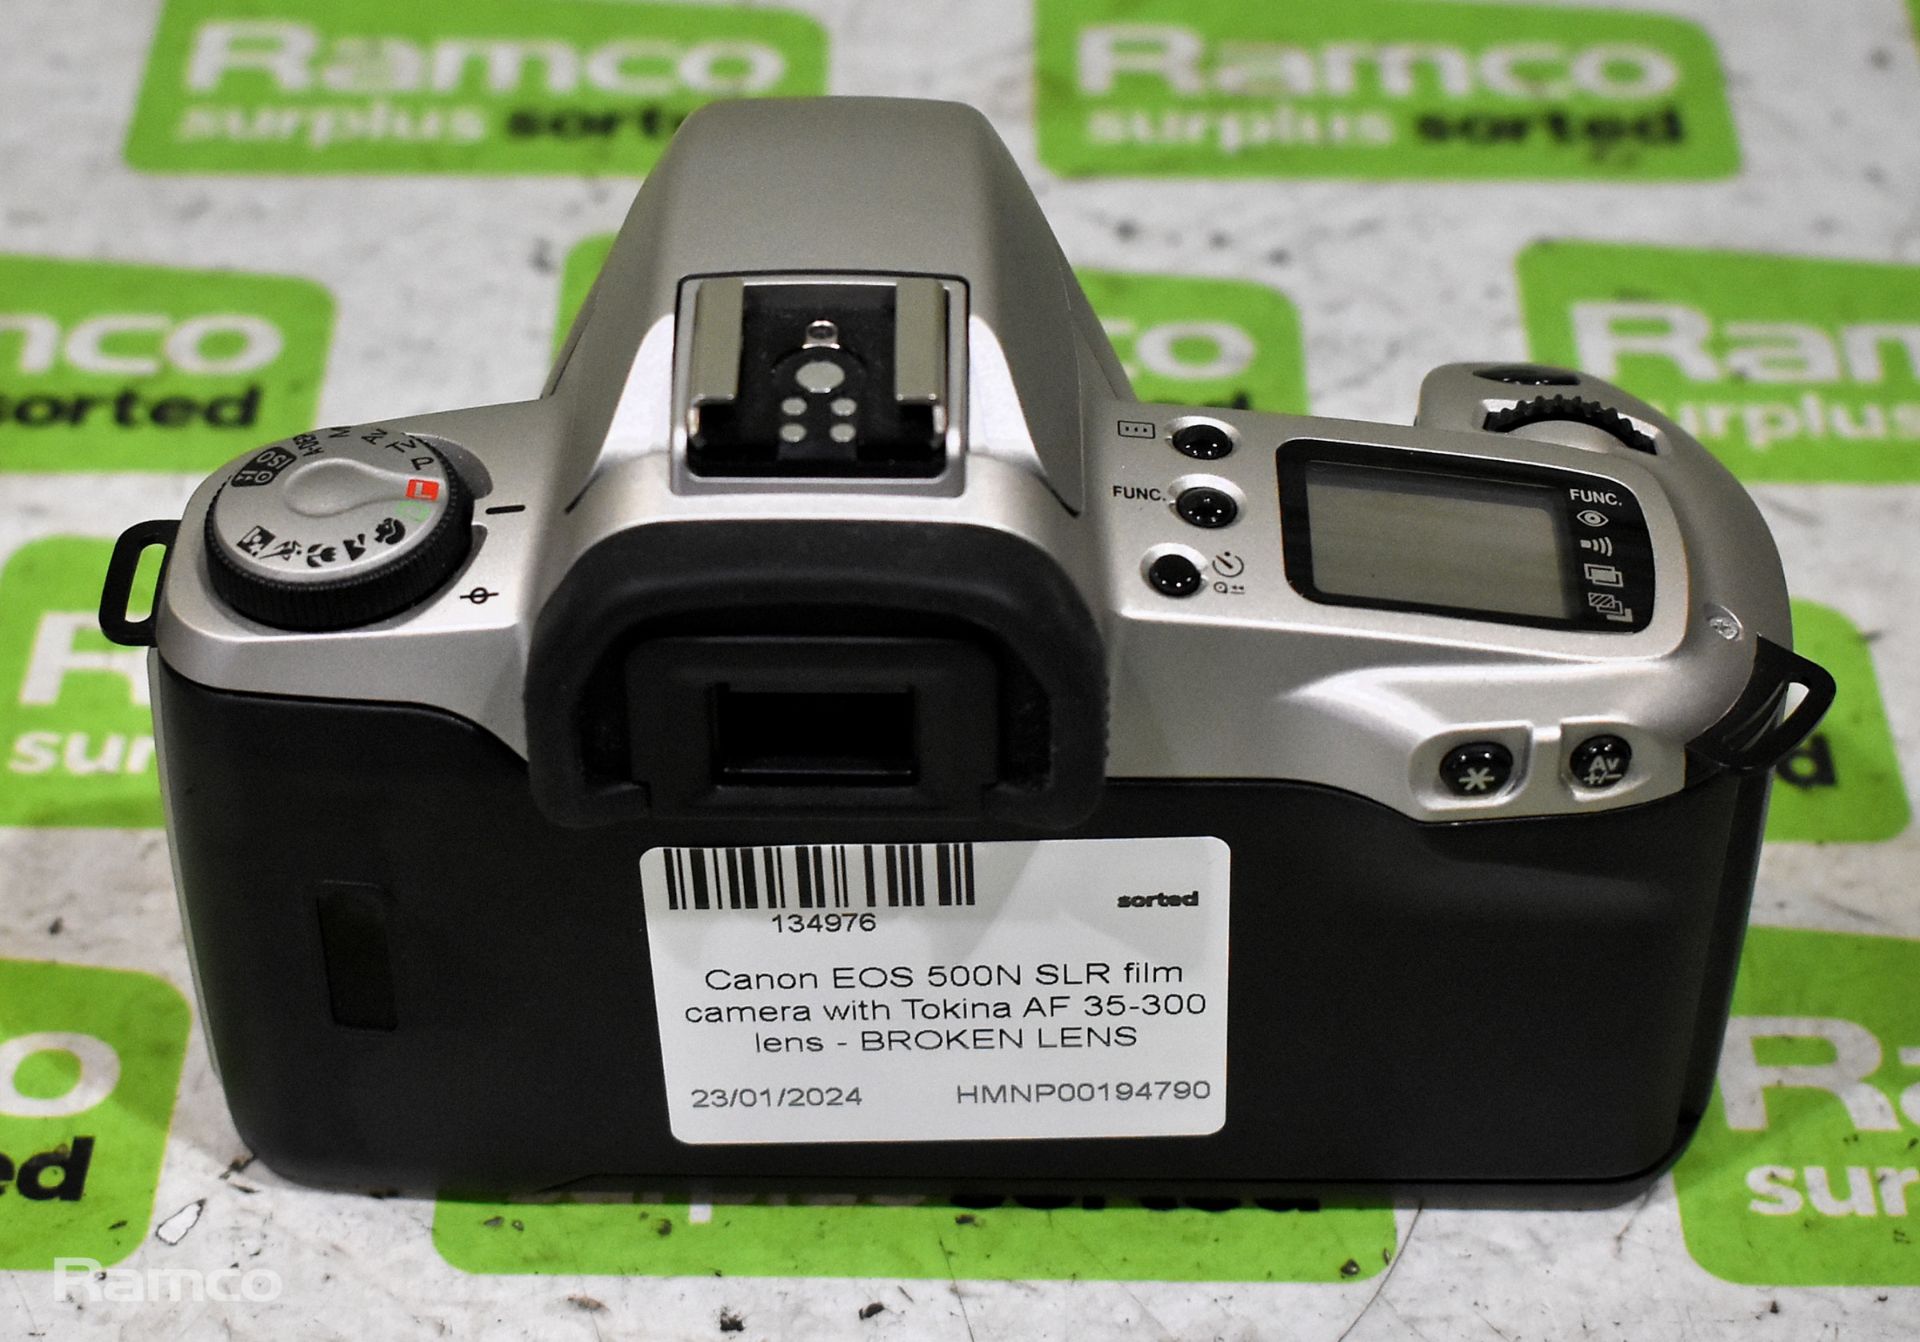 Canon EOS 500N SLR film camera with Tokina AF 35-300 lens - BROKEN LENS - Image 4 of 11